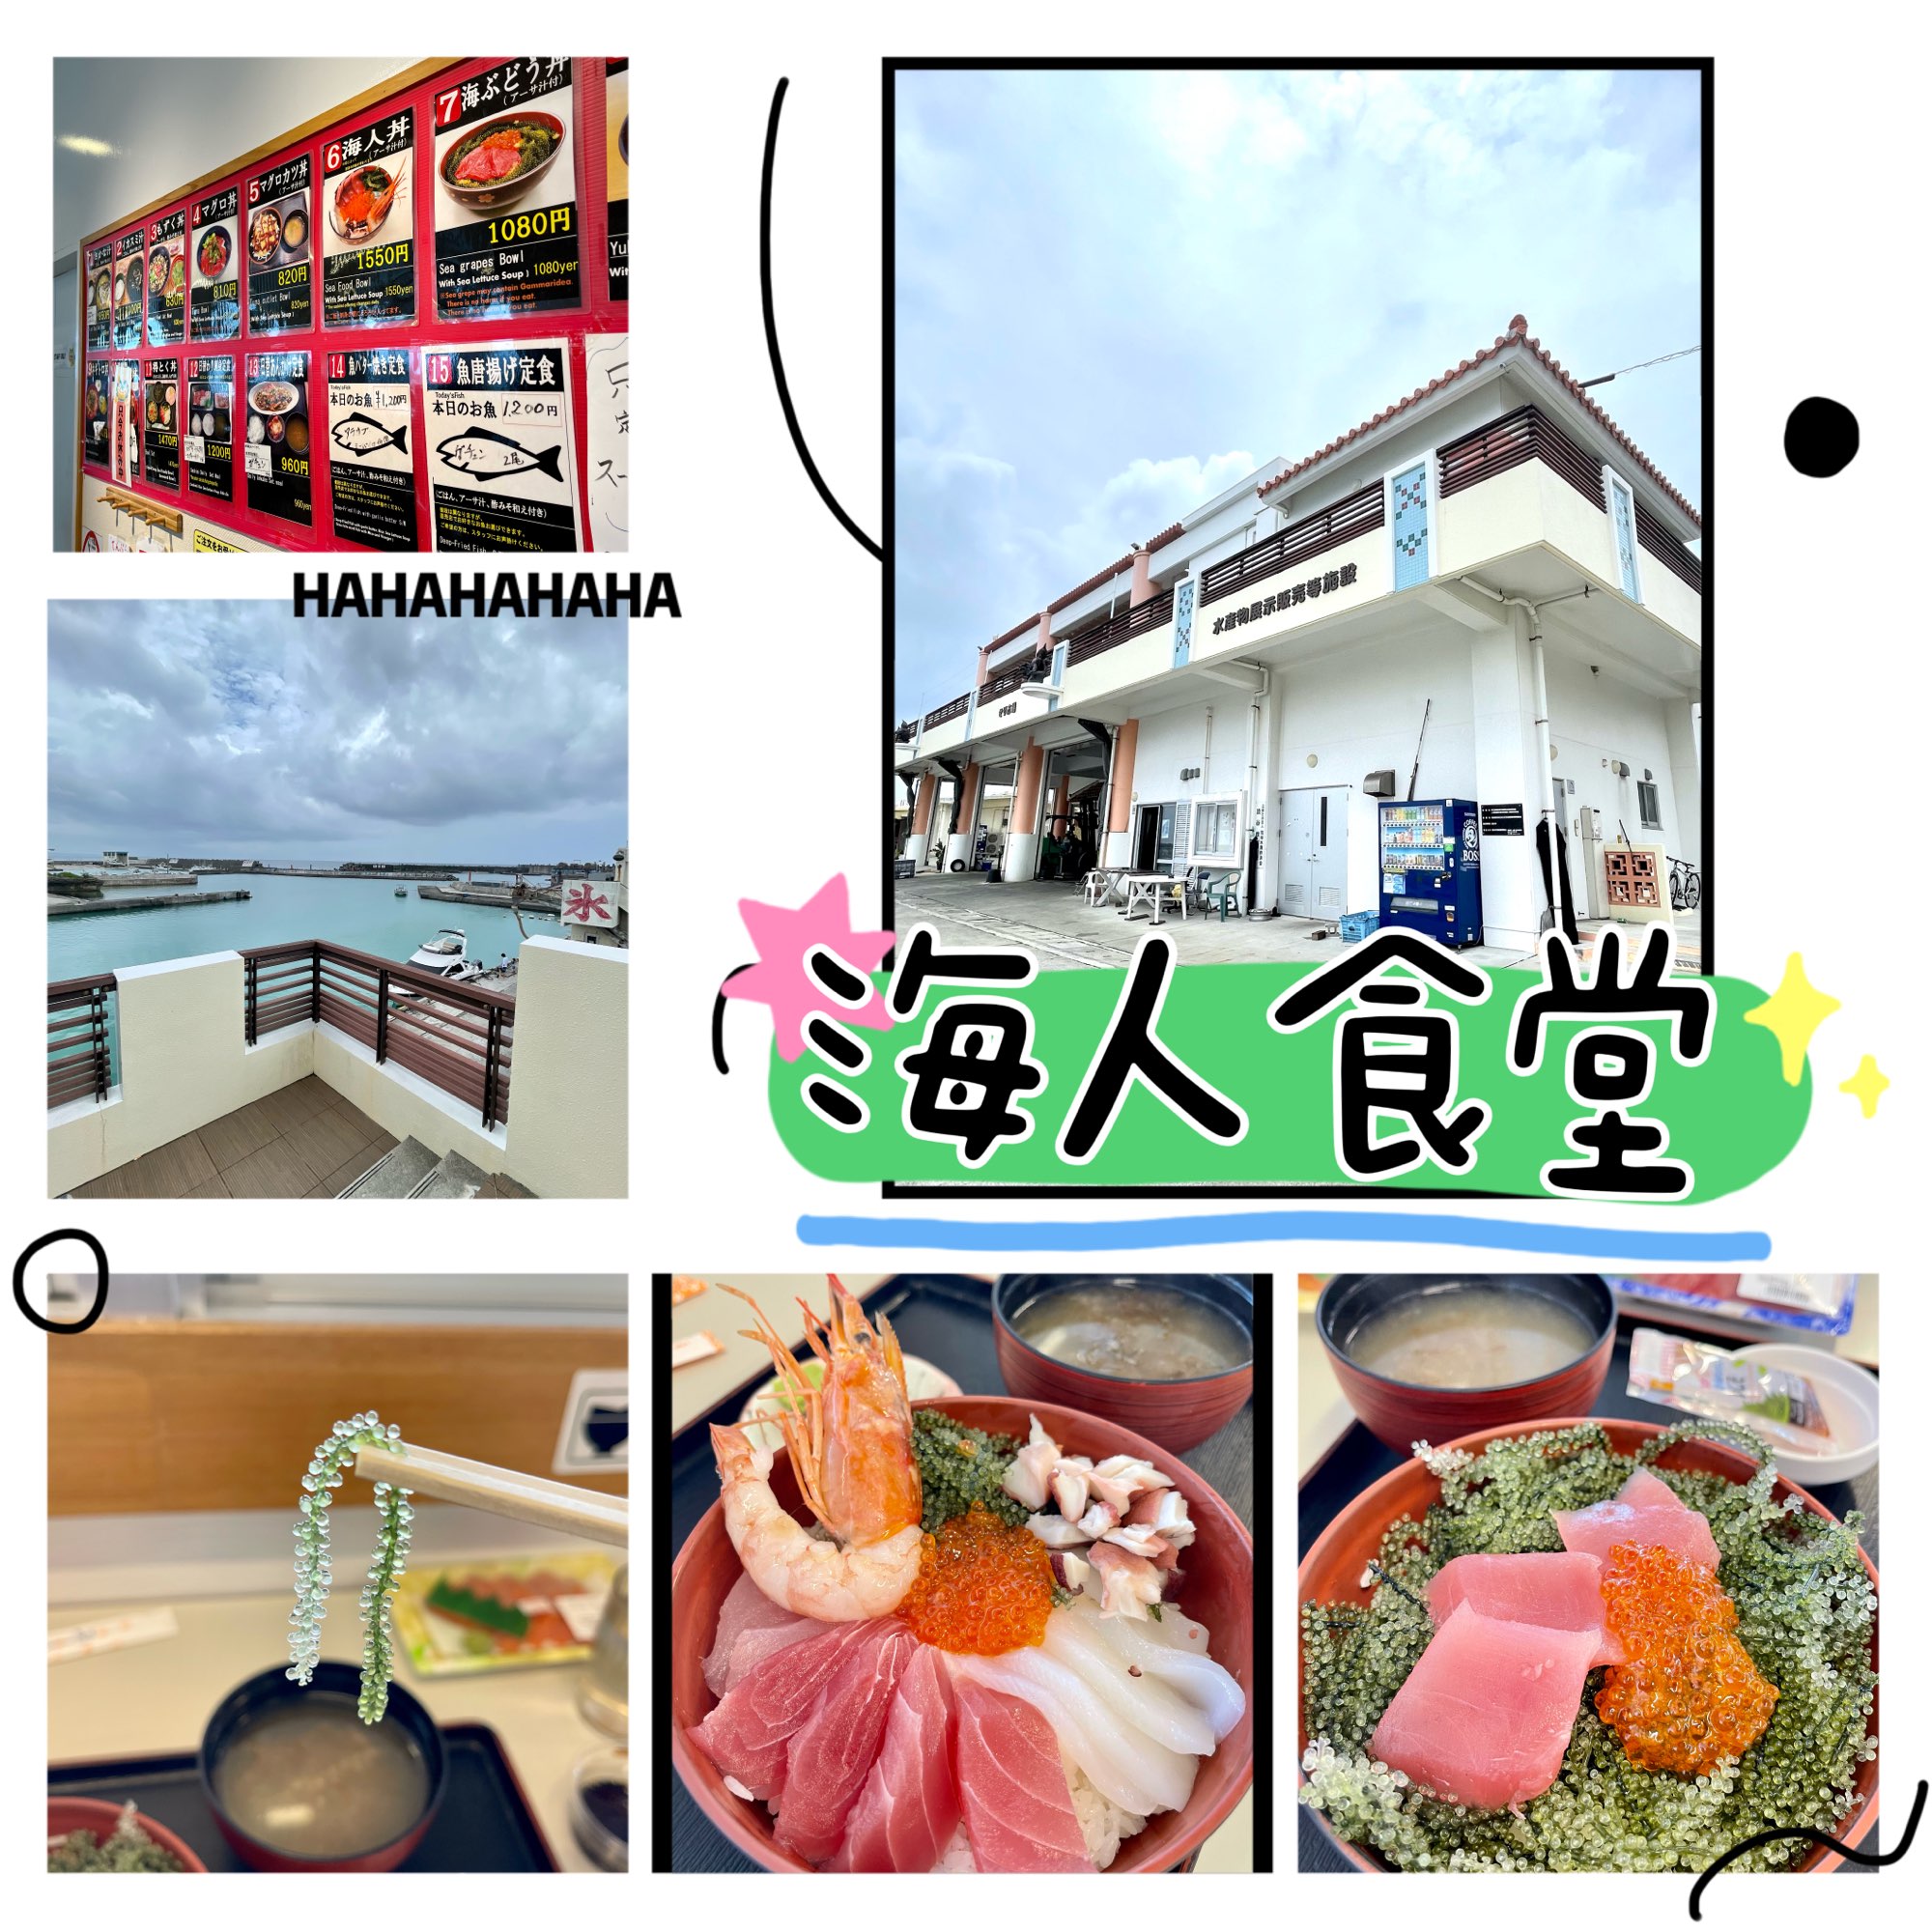 冲绳海人食堂-冲绳渔港直接食最新鲜平价鱼生丼